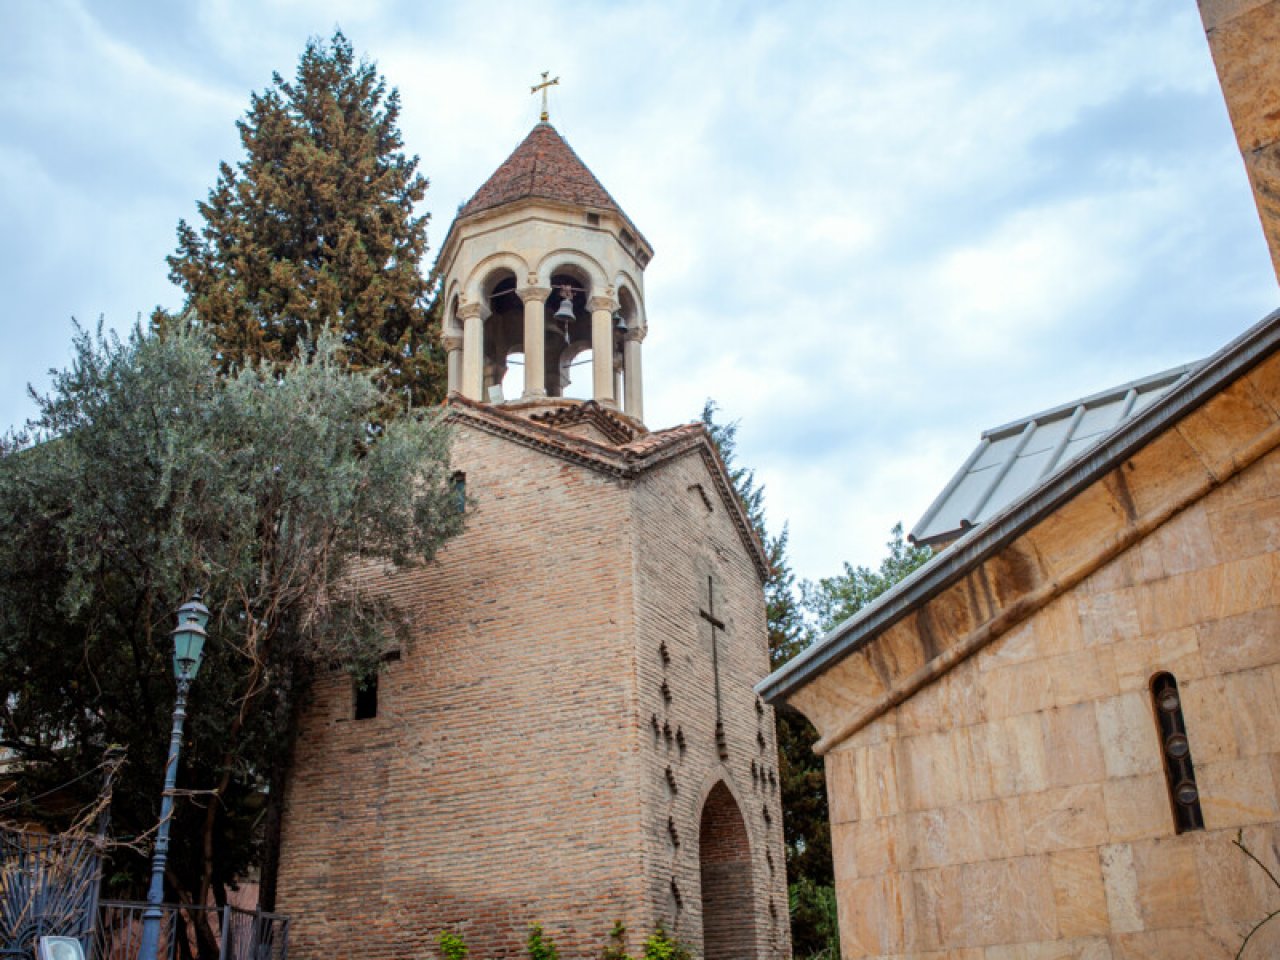 ТБИЛИСИ: Сокровища нации. Как реставрировали древнюю архитектуру в Тбилиси-29